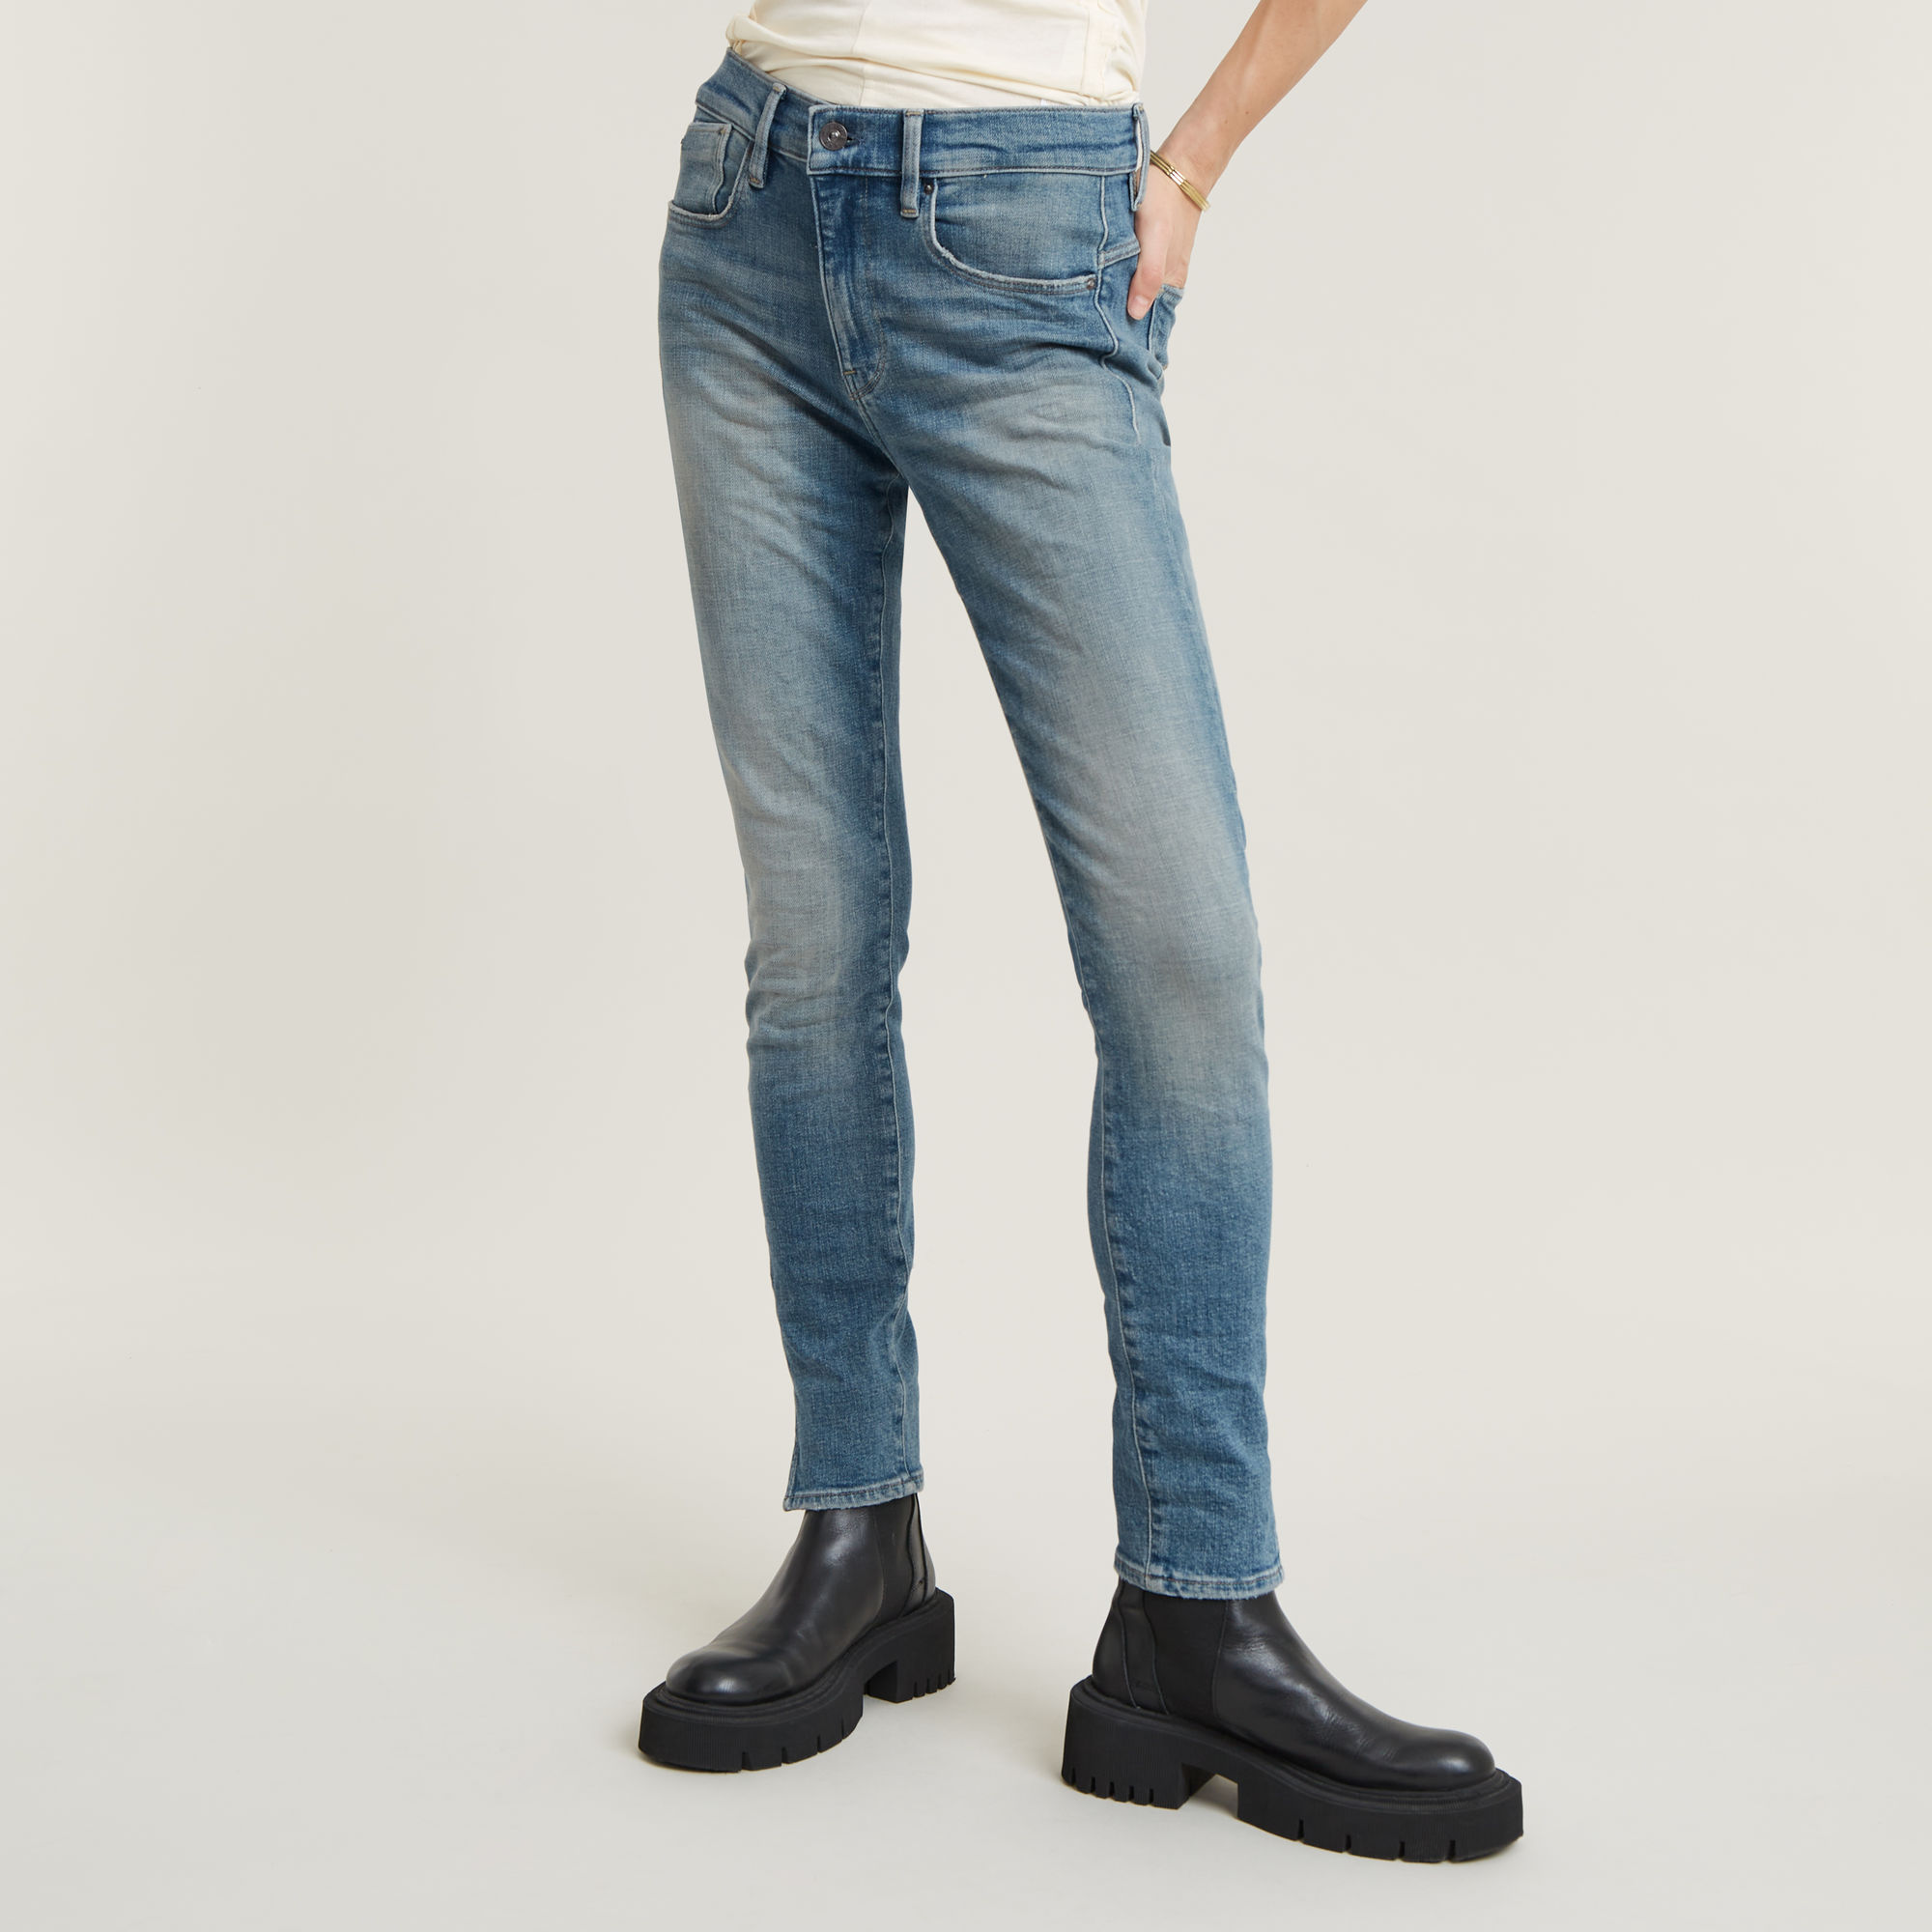 G-Star RAW Skinny-fit-Jeans "Lhana Skinny Jeans", mit Wohlfühlfaktor durch Stretchanteil